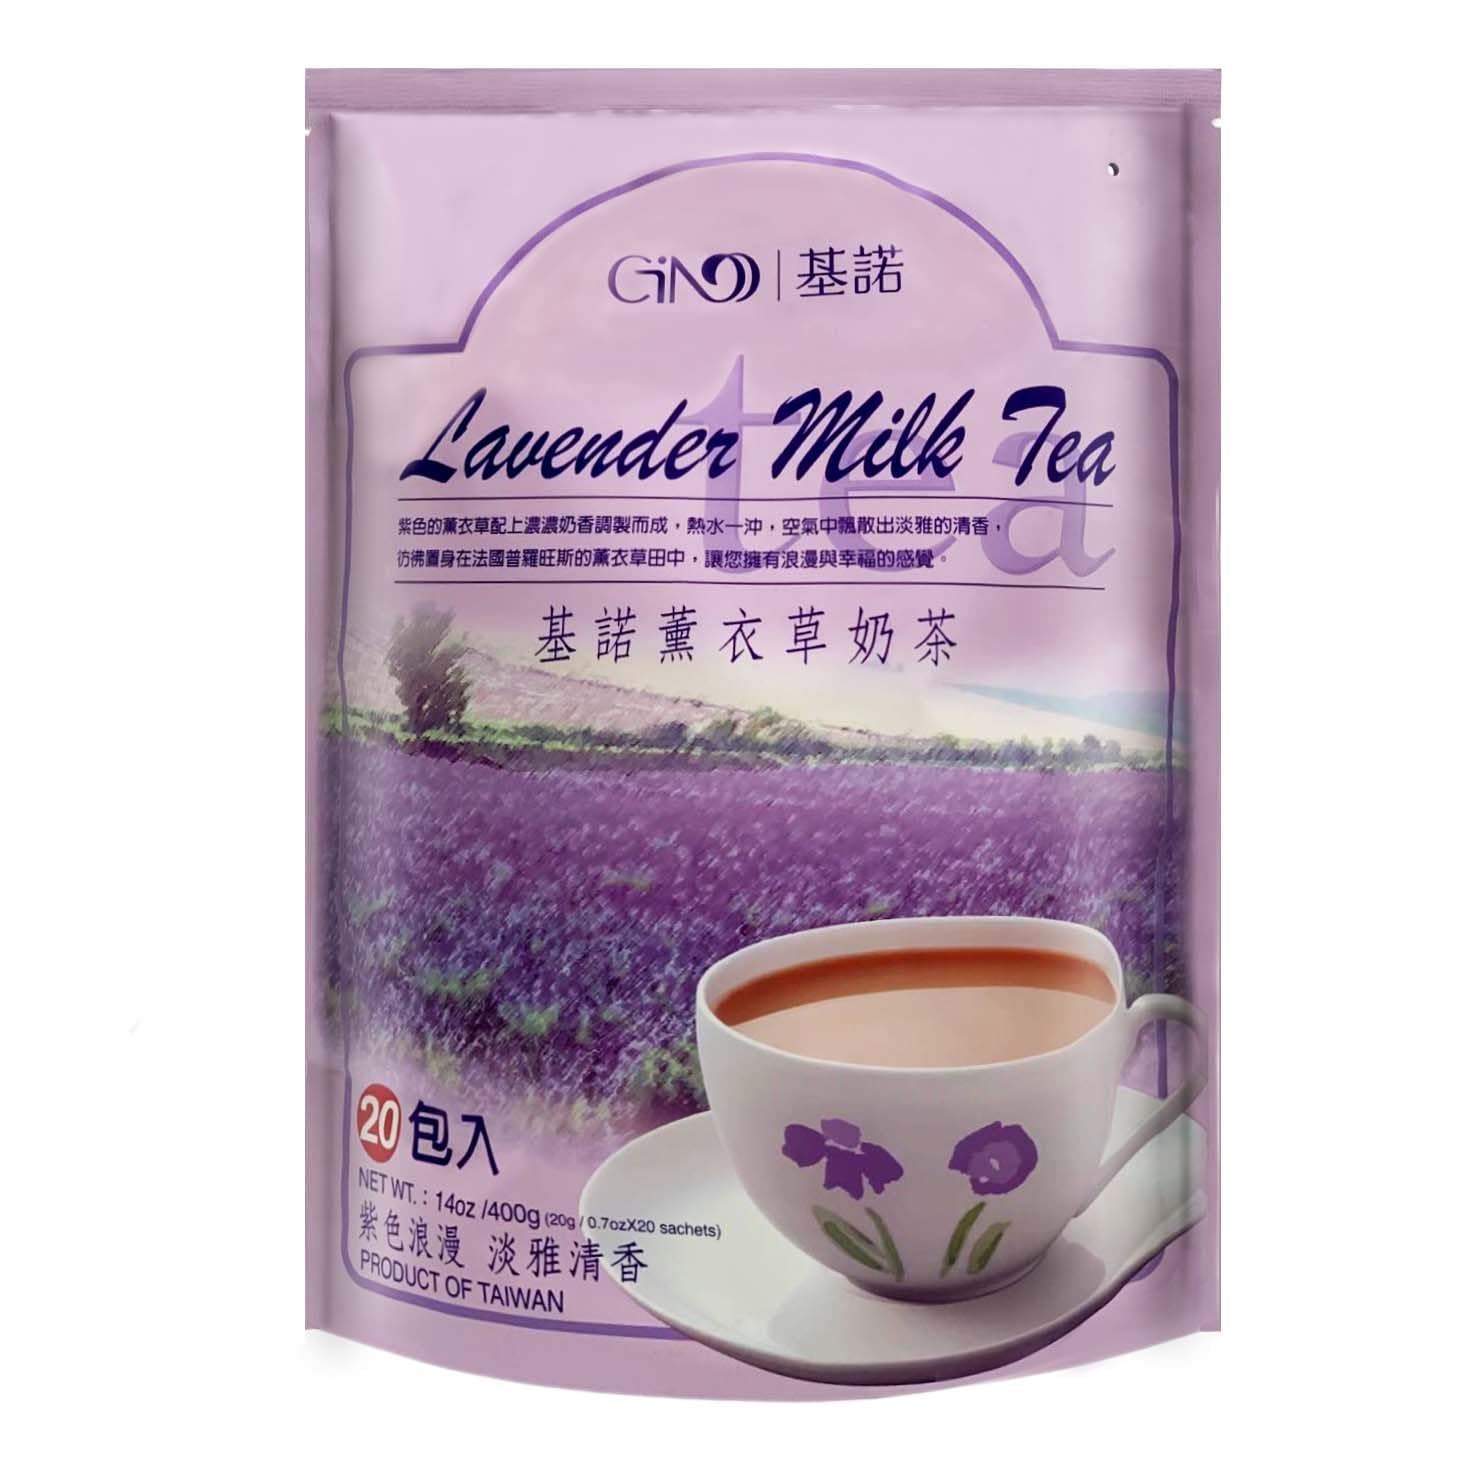 400 Gram Gino Lavender Milk Tea, 20 Sachets, Pack of 1